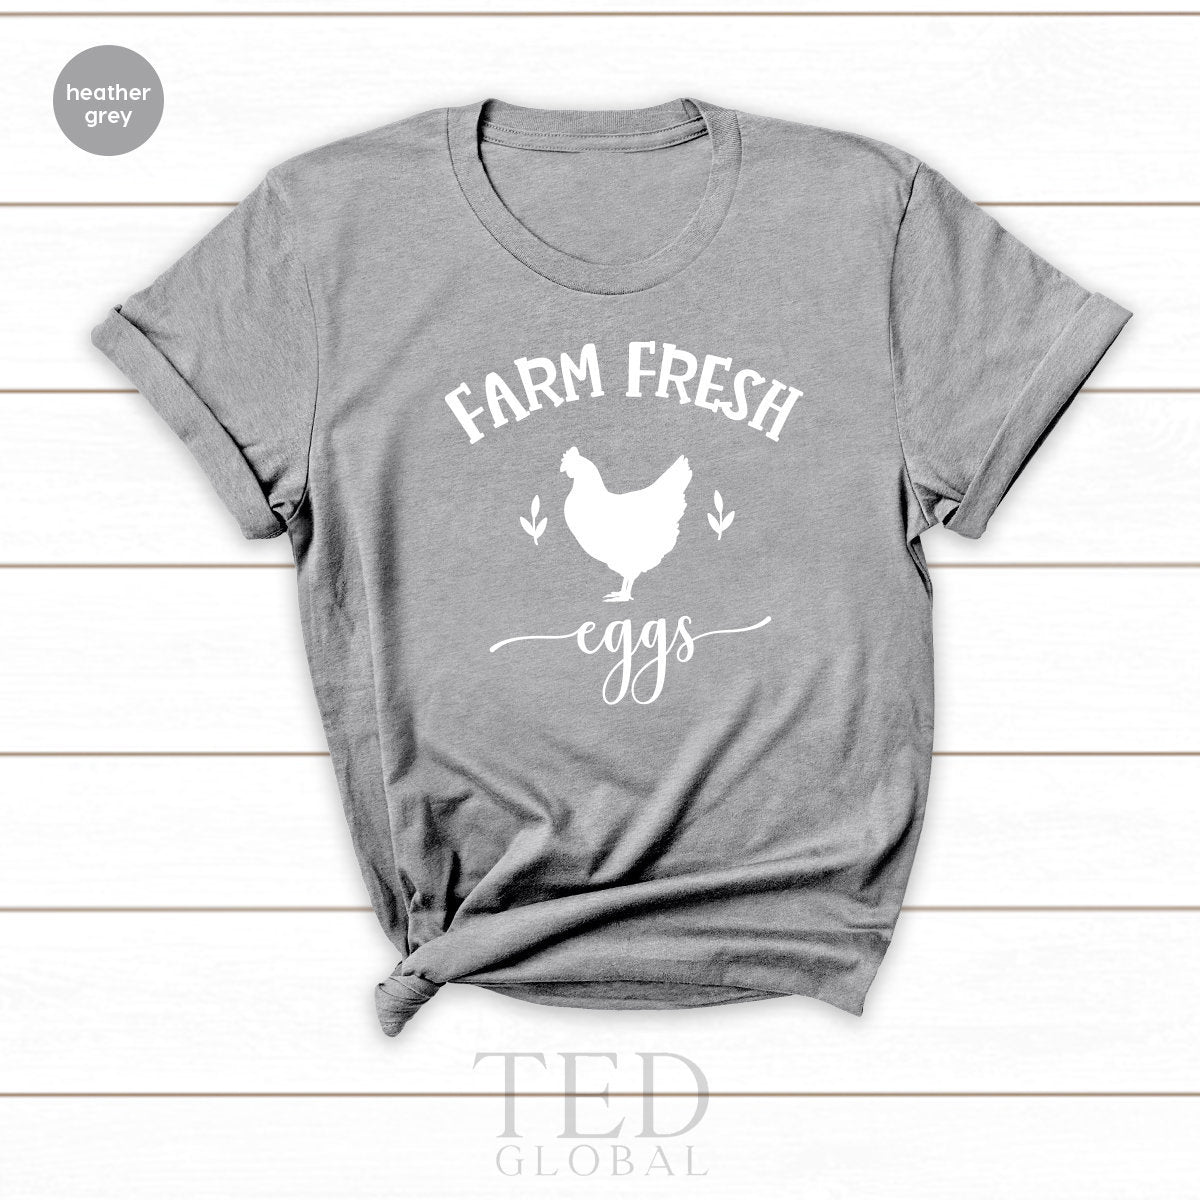 Chicken Farmer Shirt, Country Life Shirt, Farm Life  Shirt, Shirt For Farmer Dad , Farmer Mom Shirt,  Farm Fresh Eggs Shirt, Farmer Shirt - Fastdeliverytees.com